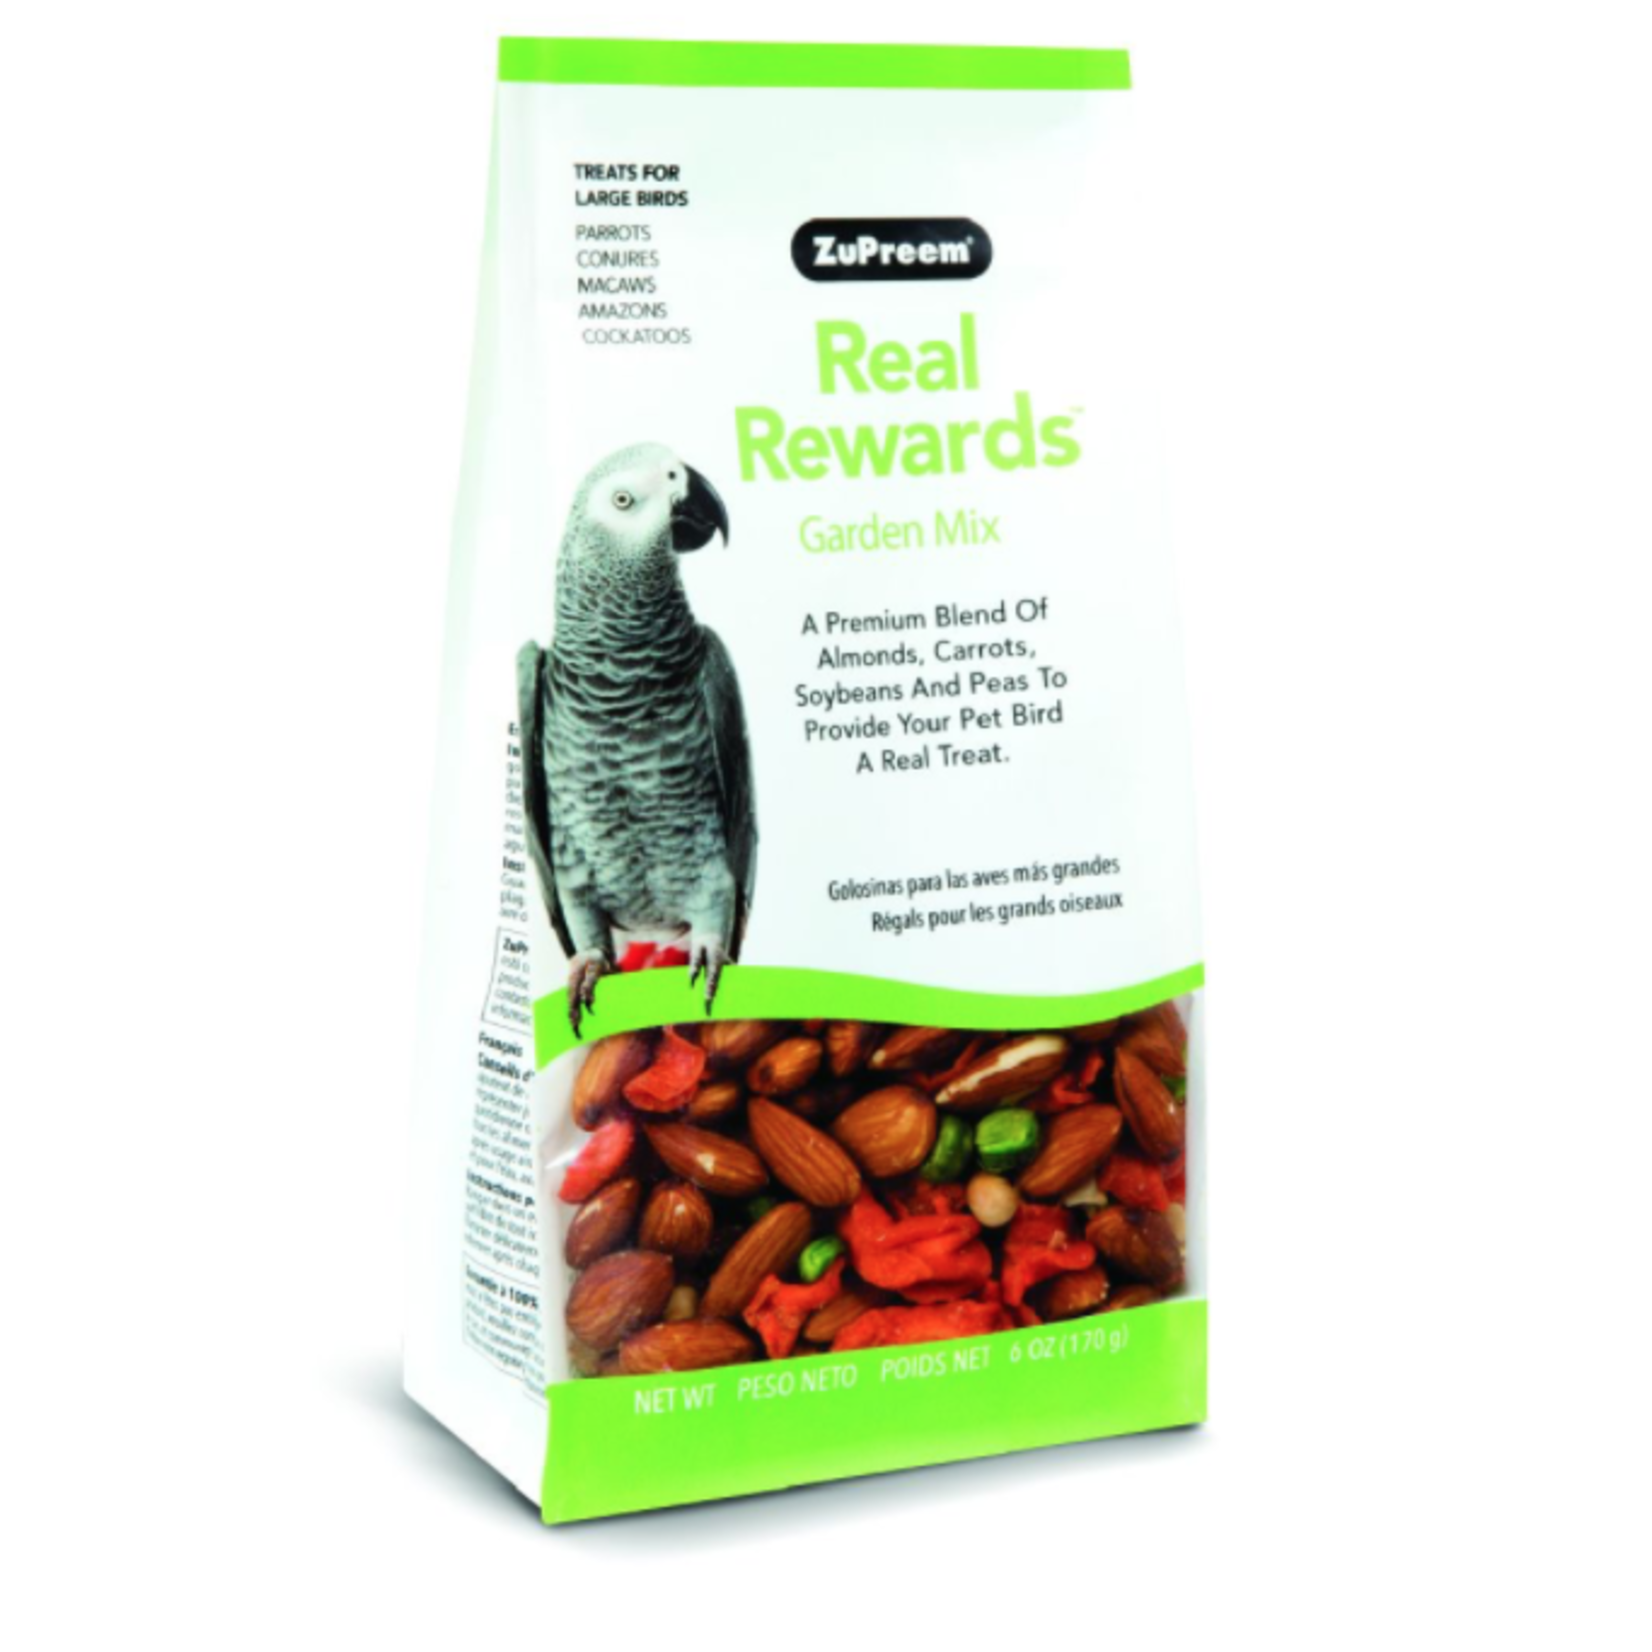 ZUPREEM ZuPreem "Real Rewards - Garden Mix" Vegetable & Nut Treats For Large Birds 6oz